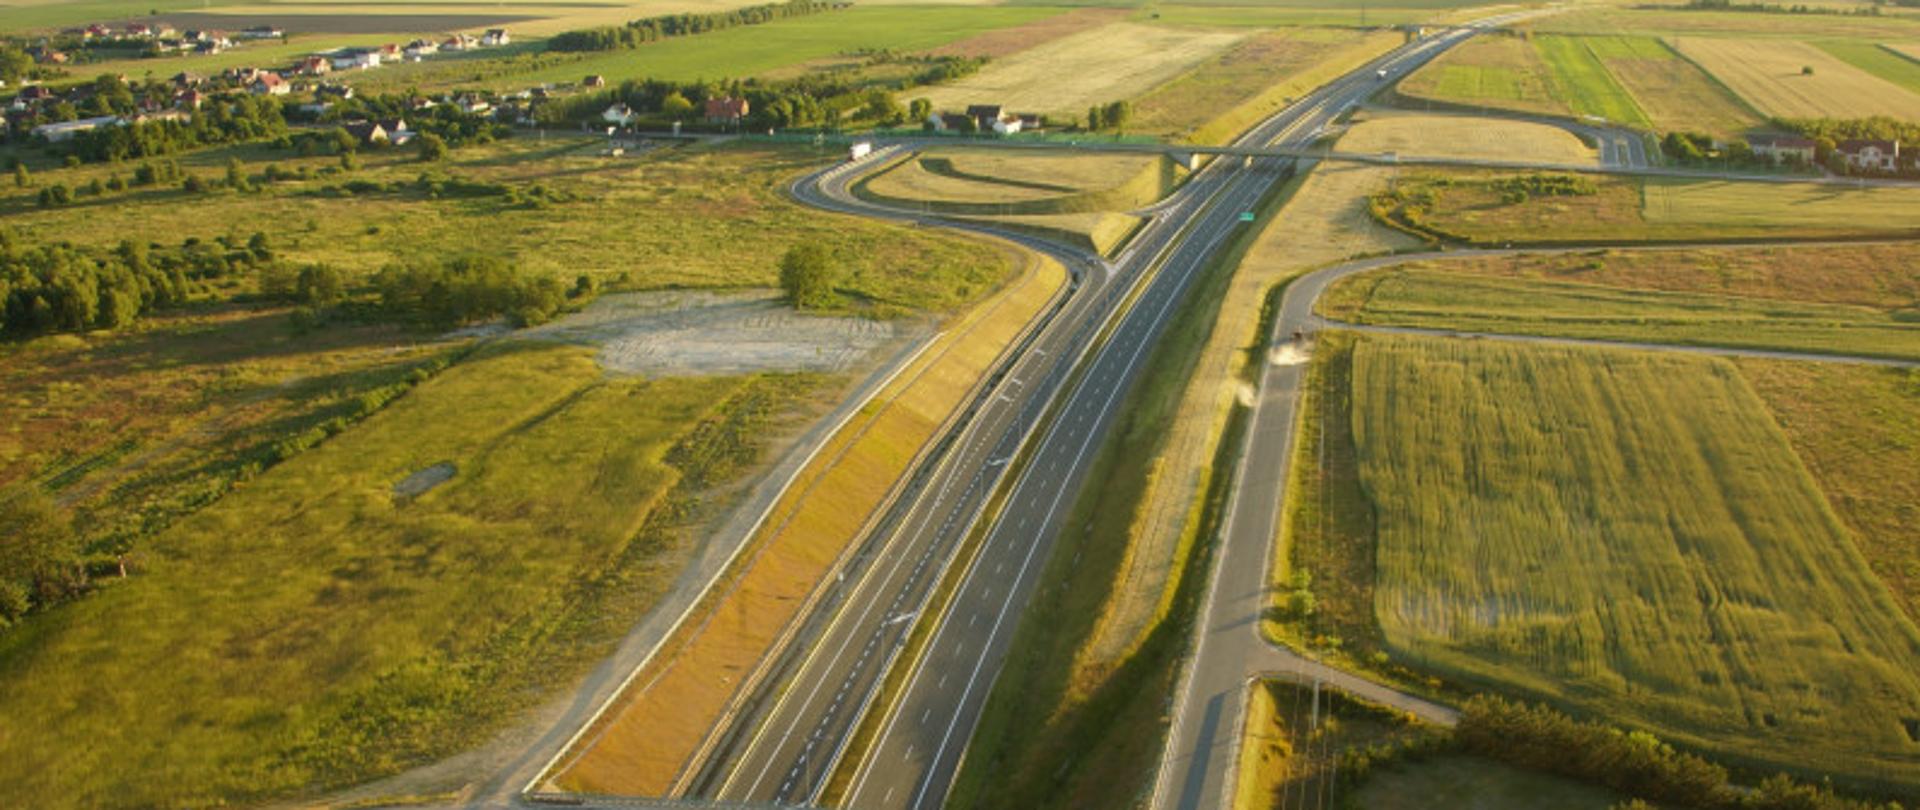 Zdjęcie lotnicze drogi ekspresowej S6. Widoczne dwie jezdnie drogi, węzeł z wiaduktami oraz drogami dojazdowymi. W tle widoczne zabudowania oraz farma wiatrowa.